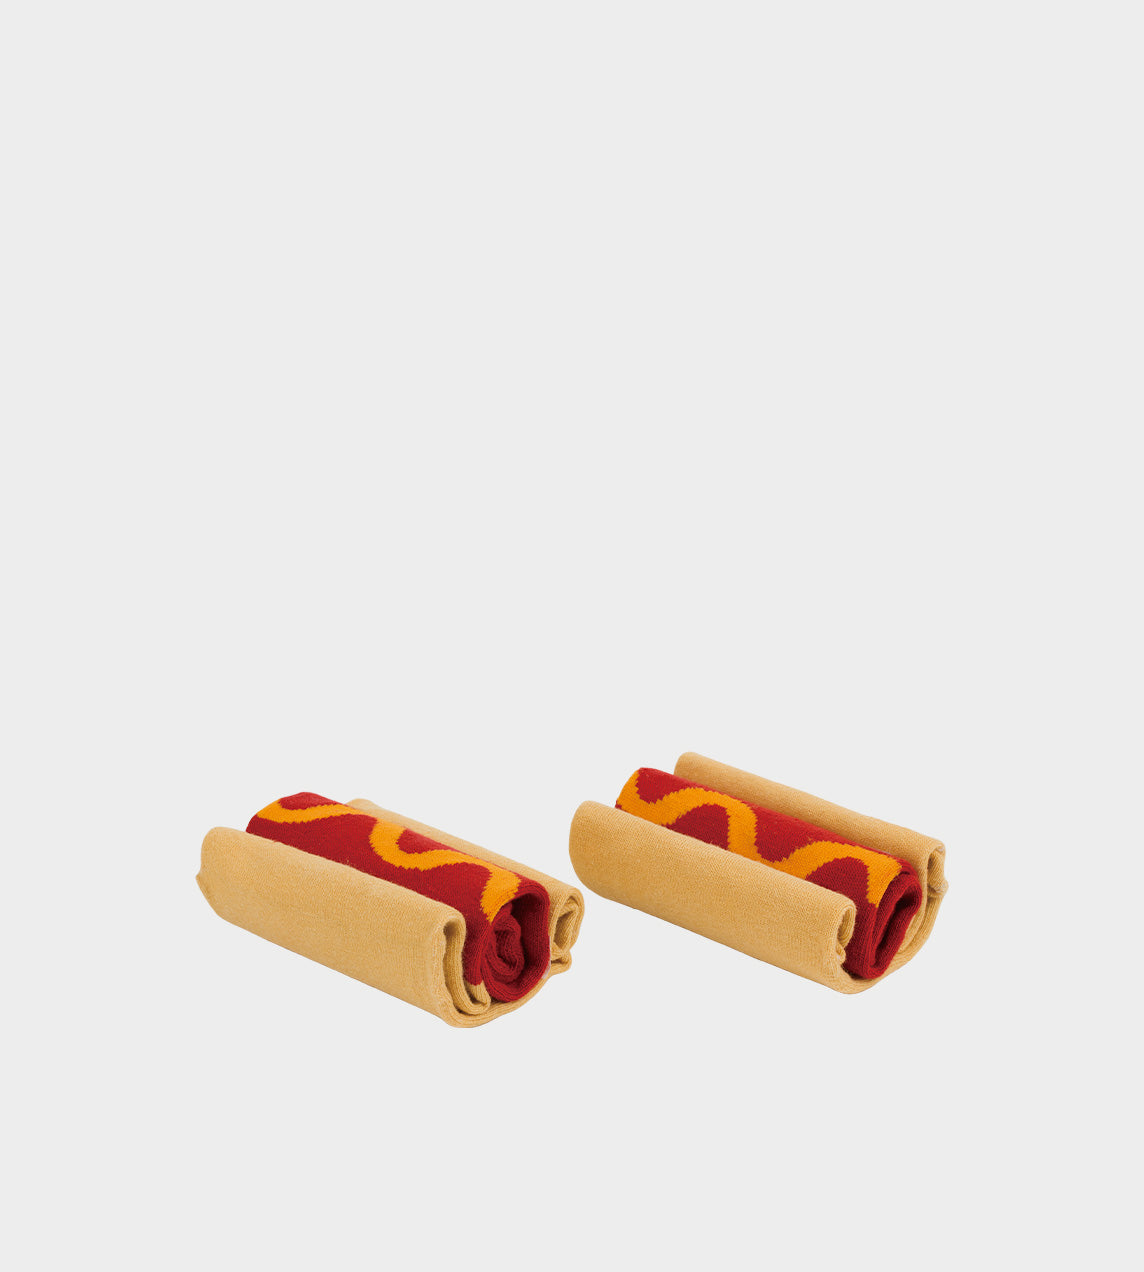 EAT MY SOCKS - Hot Dog Socks - 1 Pair